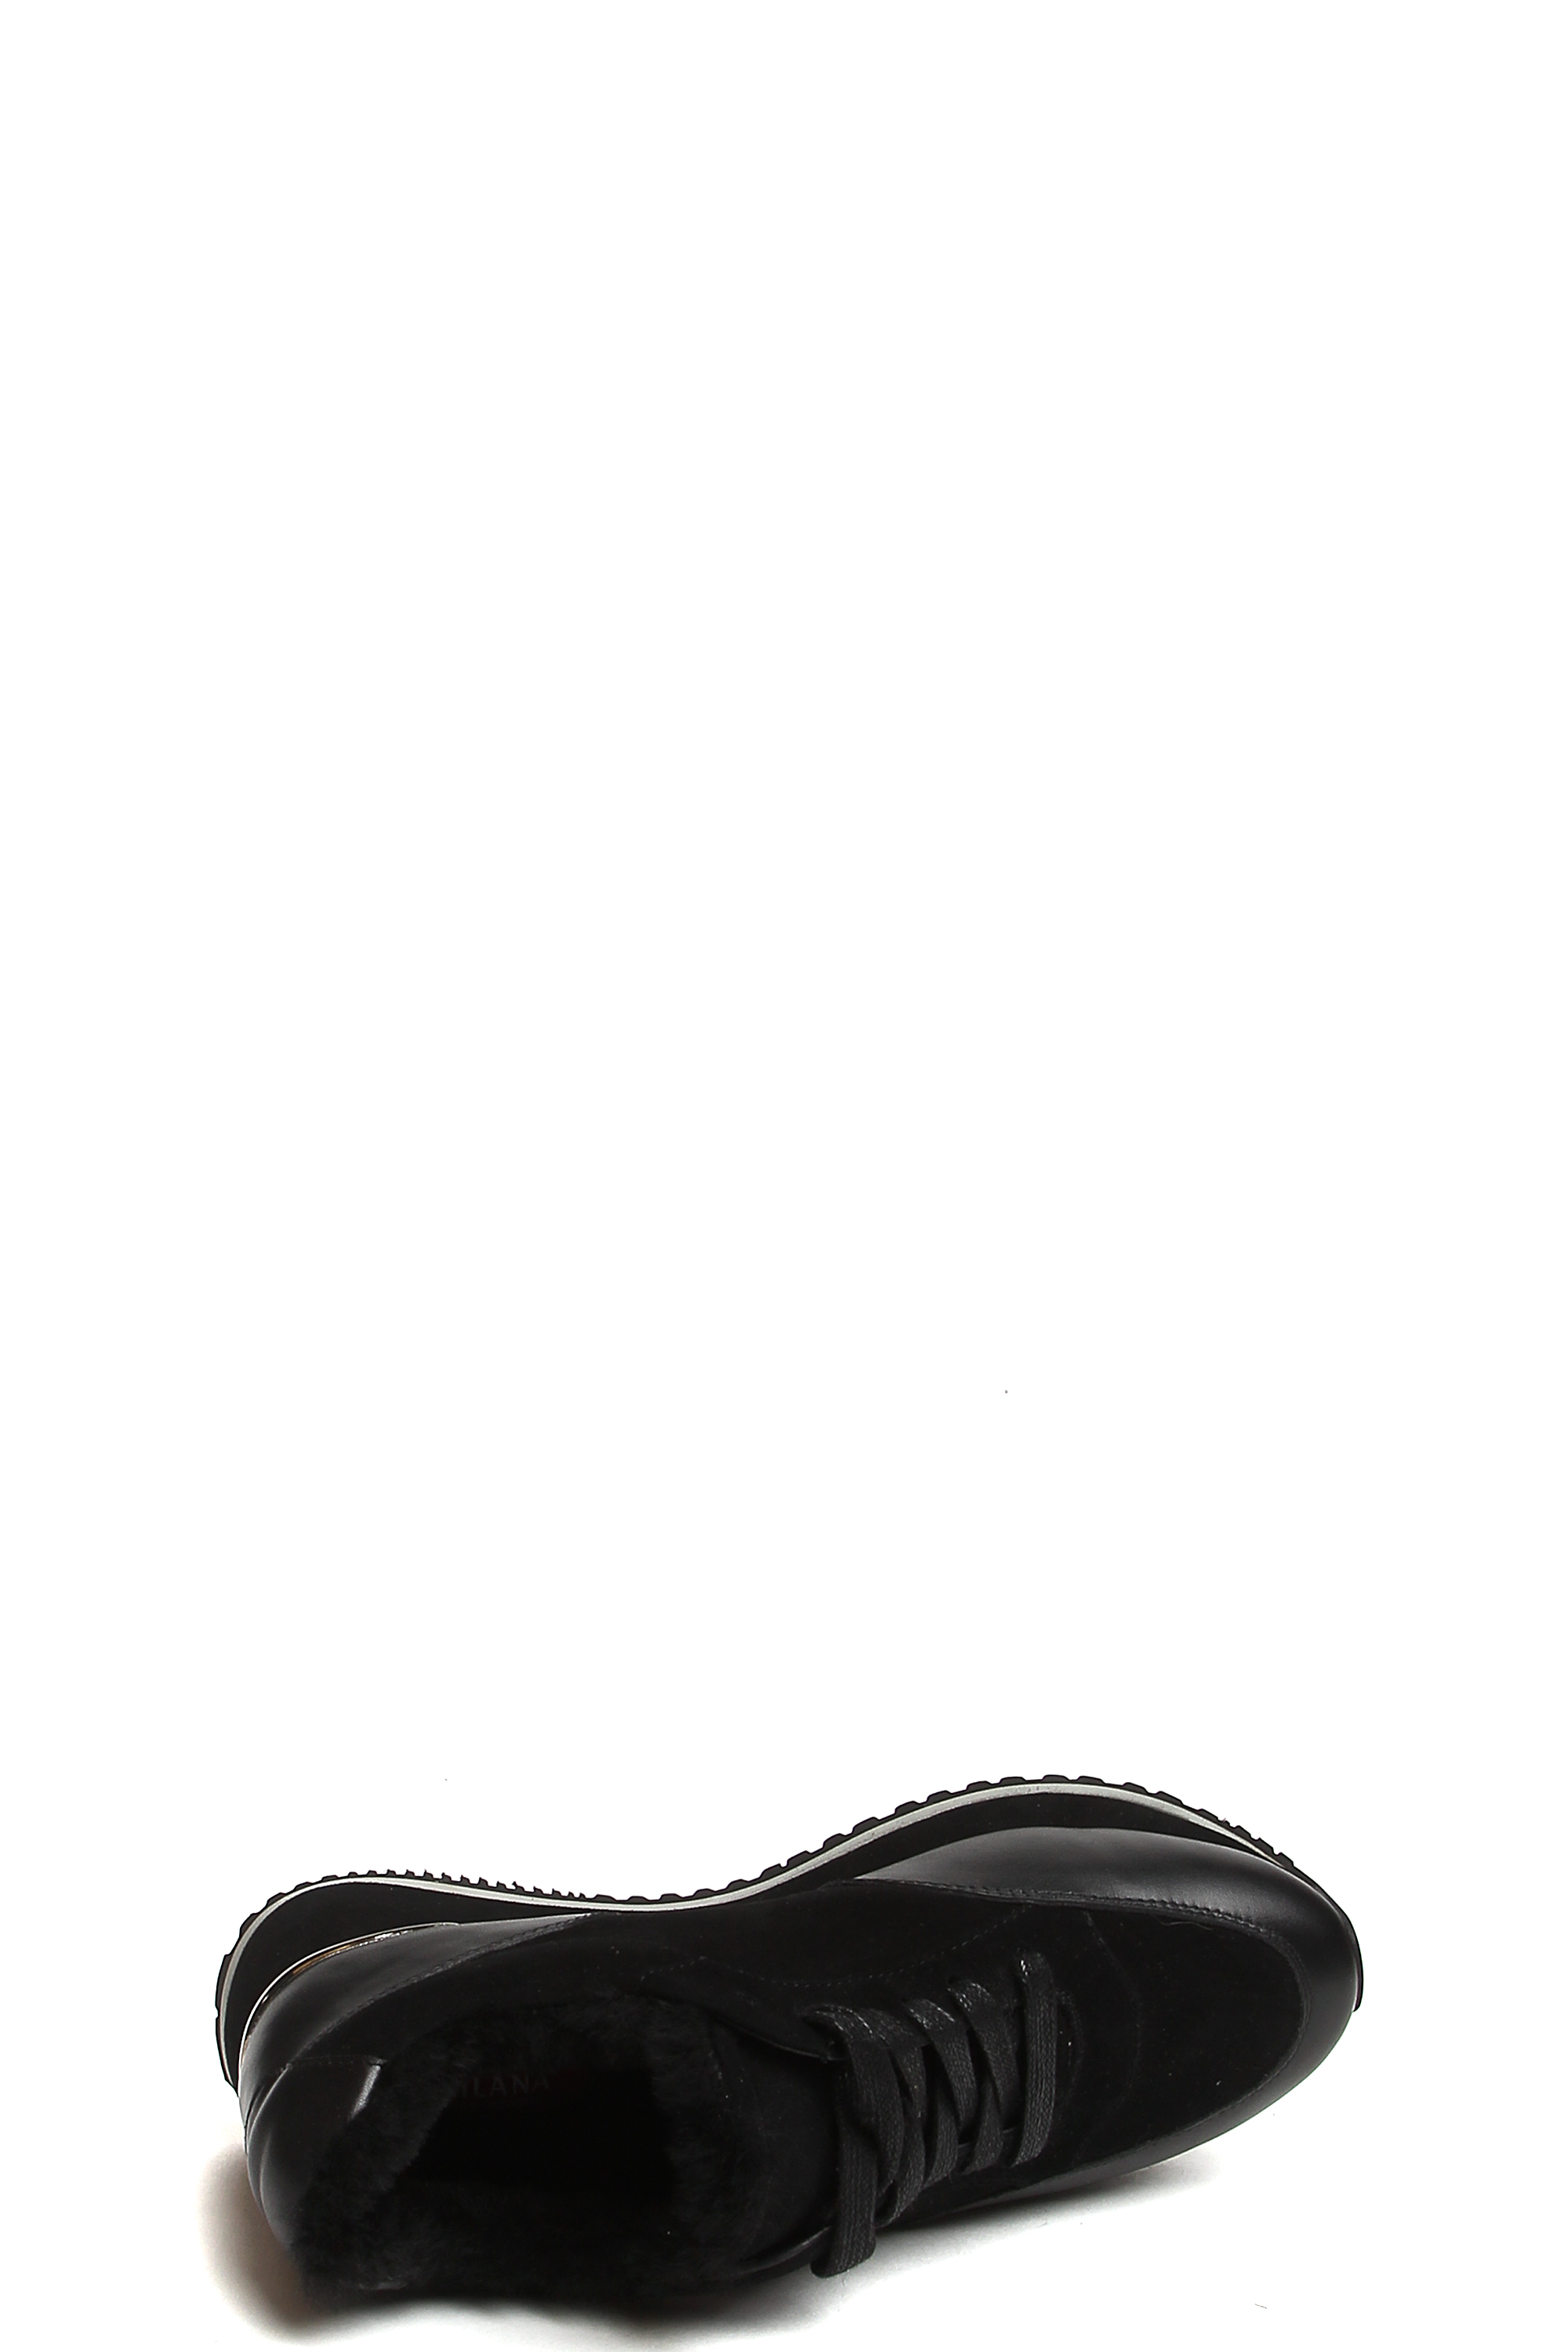 Ботинки MILANA 182177-1-210F черный - купить 7990